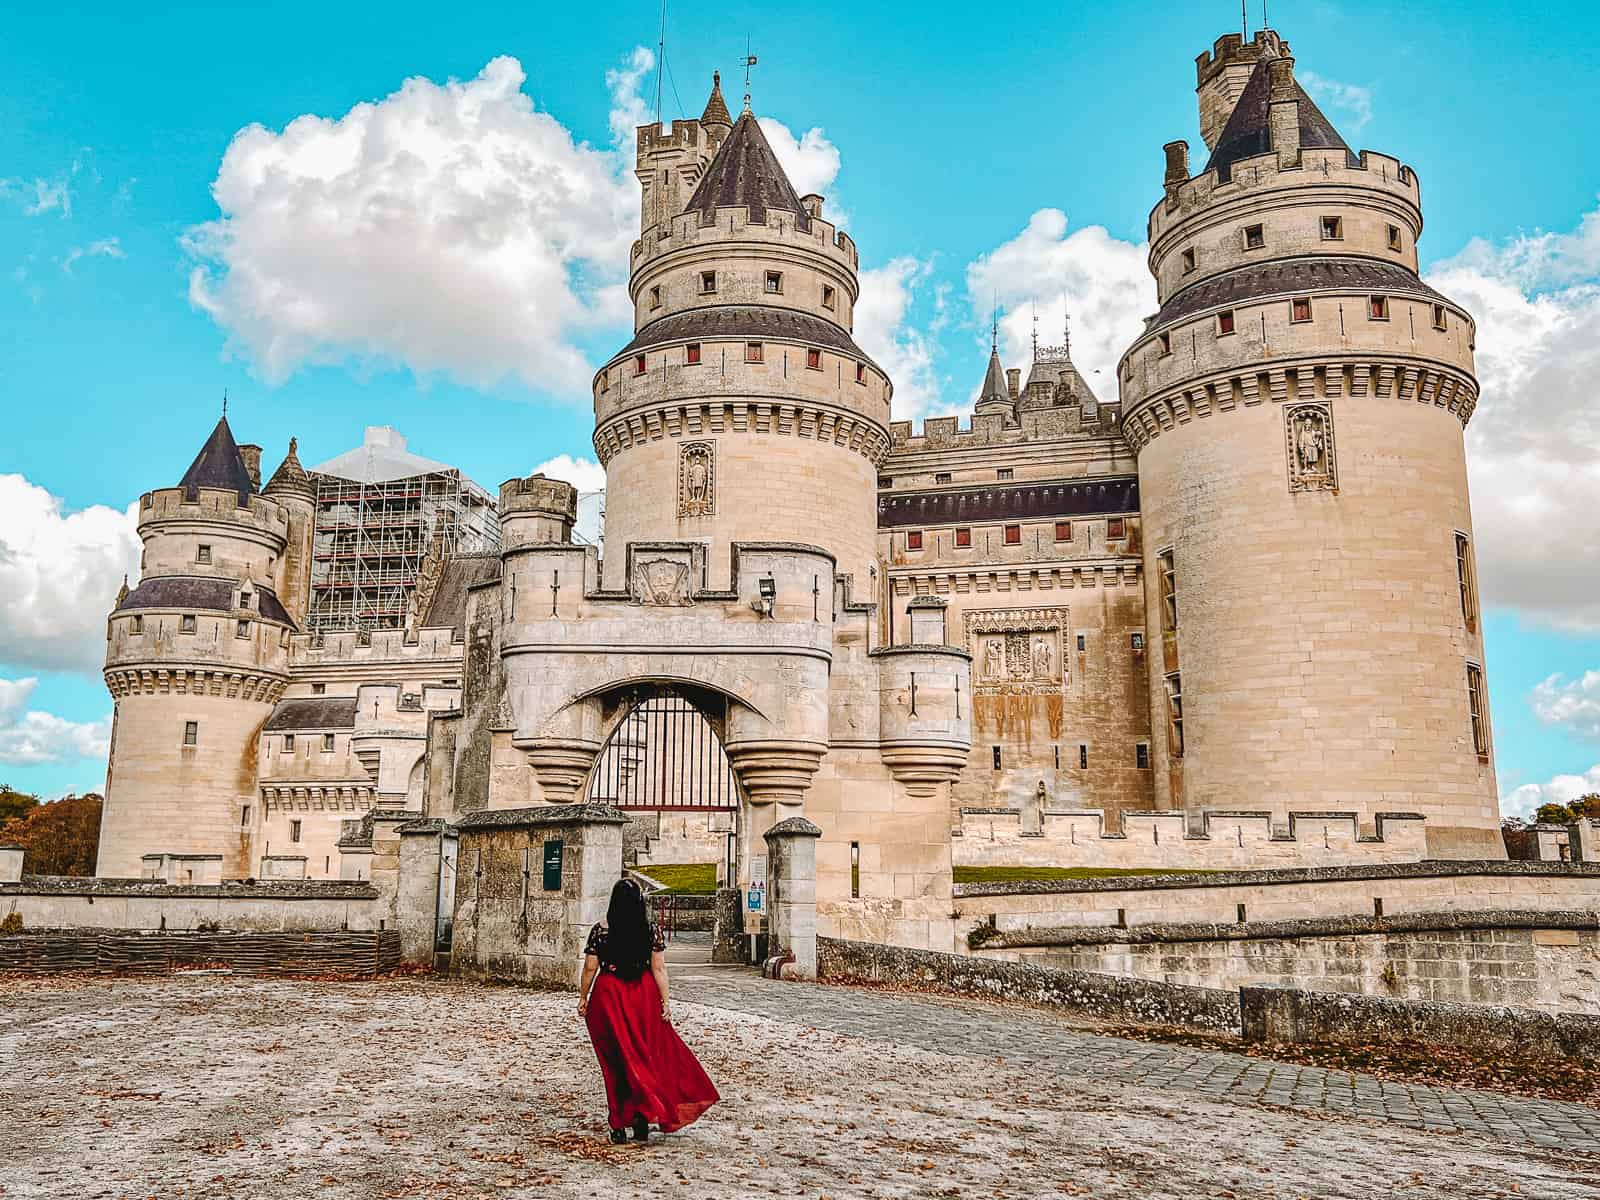 Chateau de Pierrefonds Merlin filming location aka Camelot Castle!